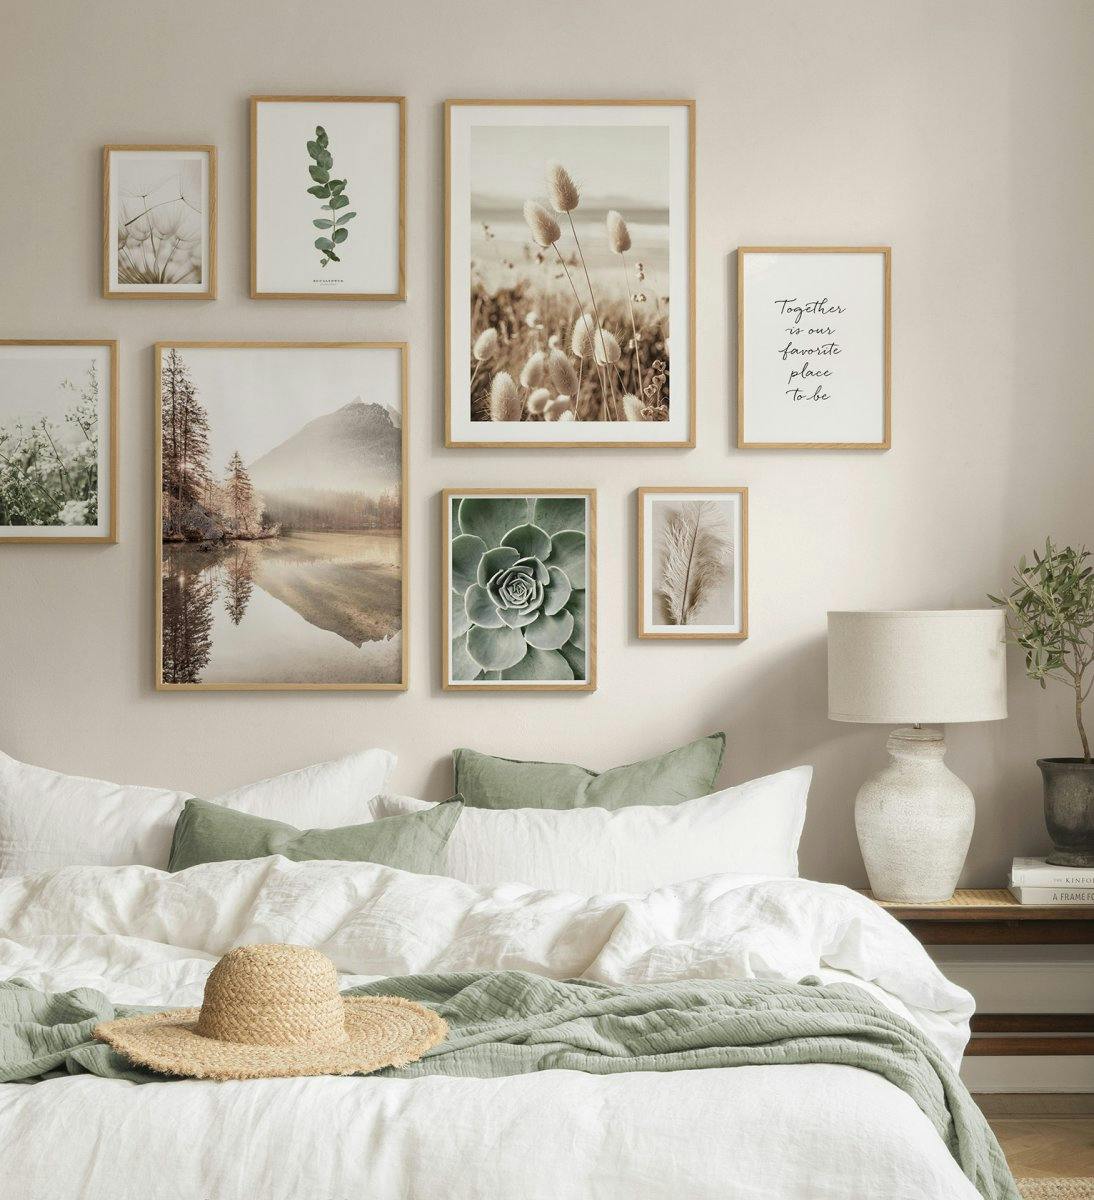 Décoration murale tendance beige avec des affiches de fleurs dans des cadres en chêne pour la chambre